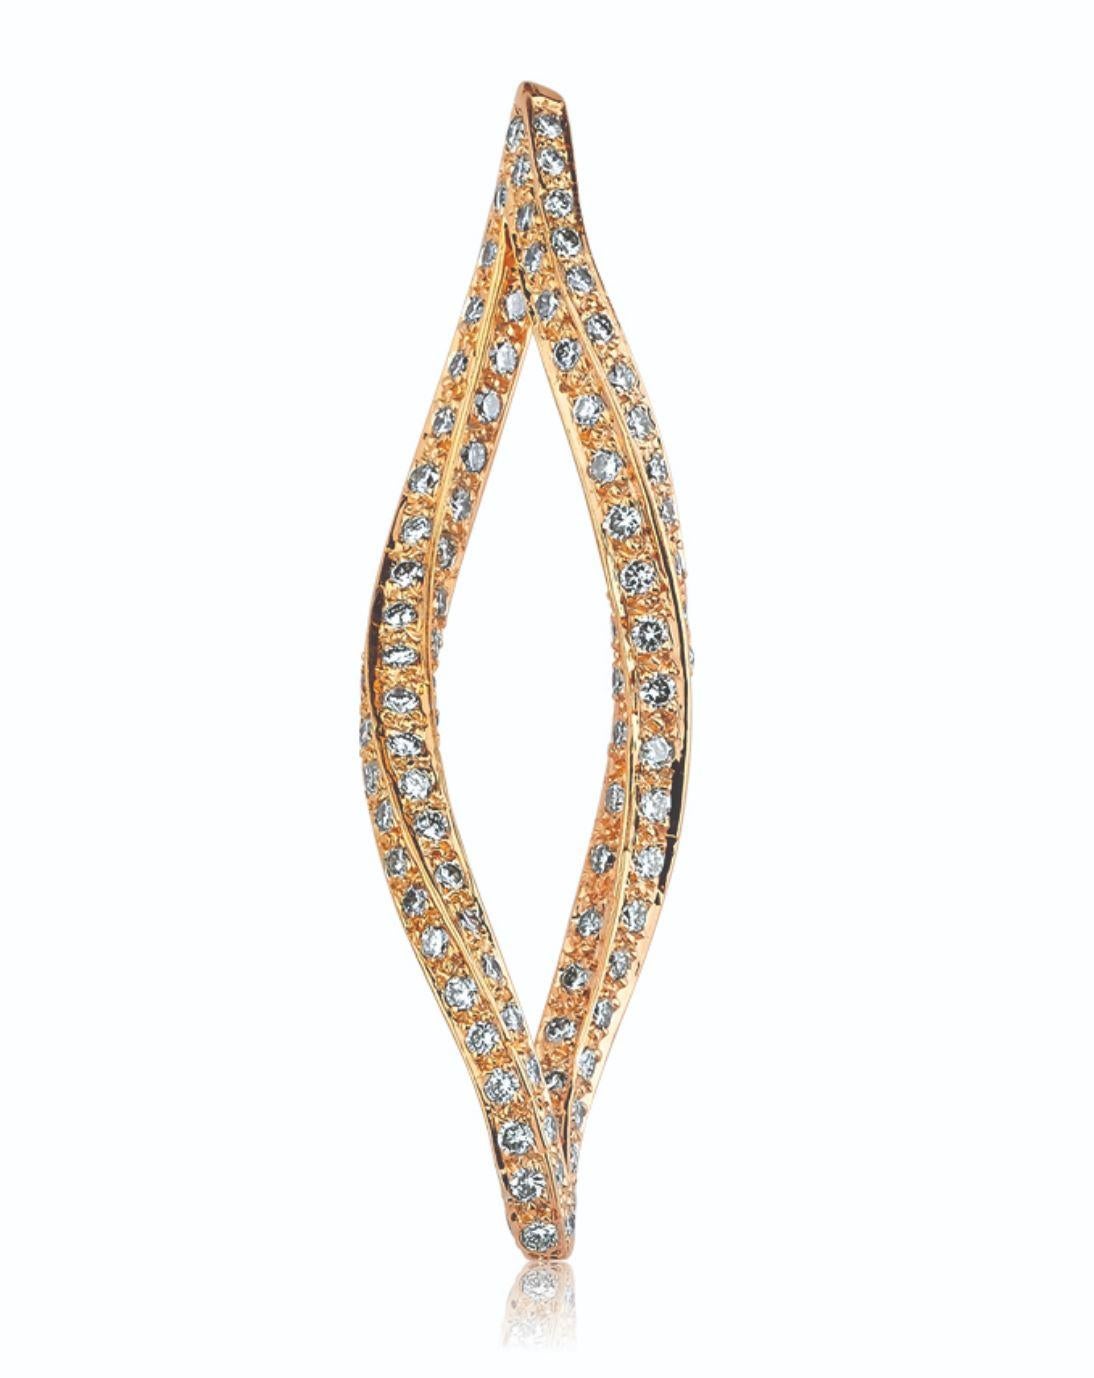 Des diamants de 1,90 ct Brilliante sont sertis dans un pendentif en or rose 18 carats de 4,70 g avec une chaîne en or rose 14 carats.